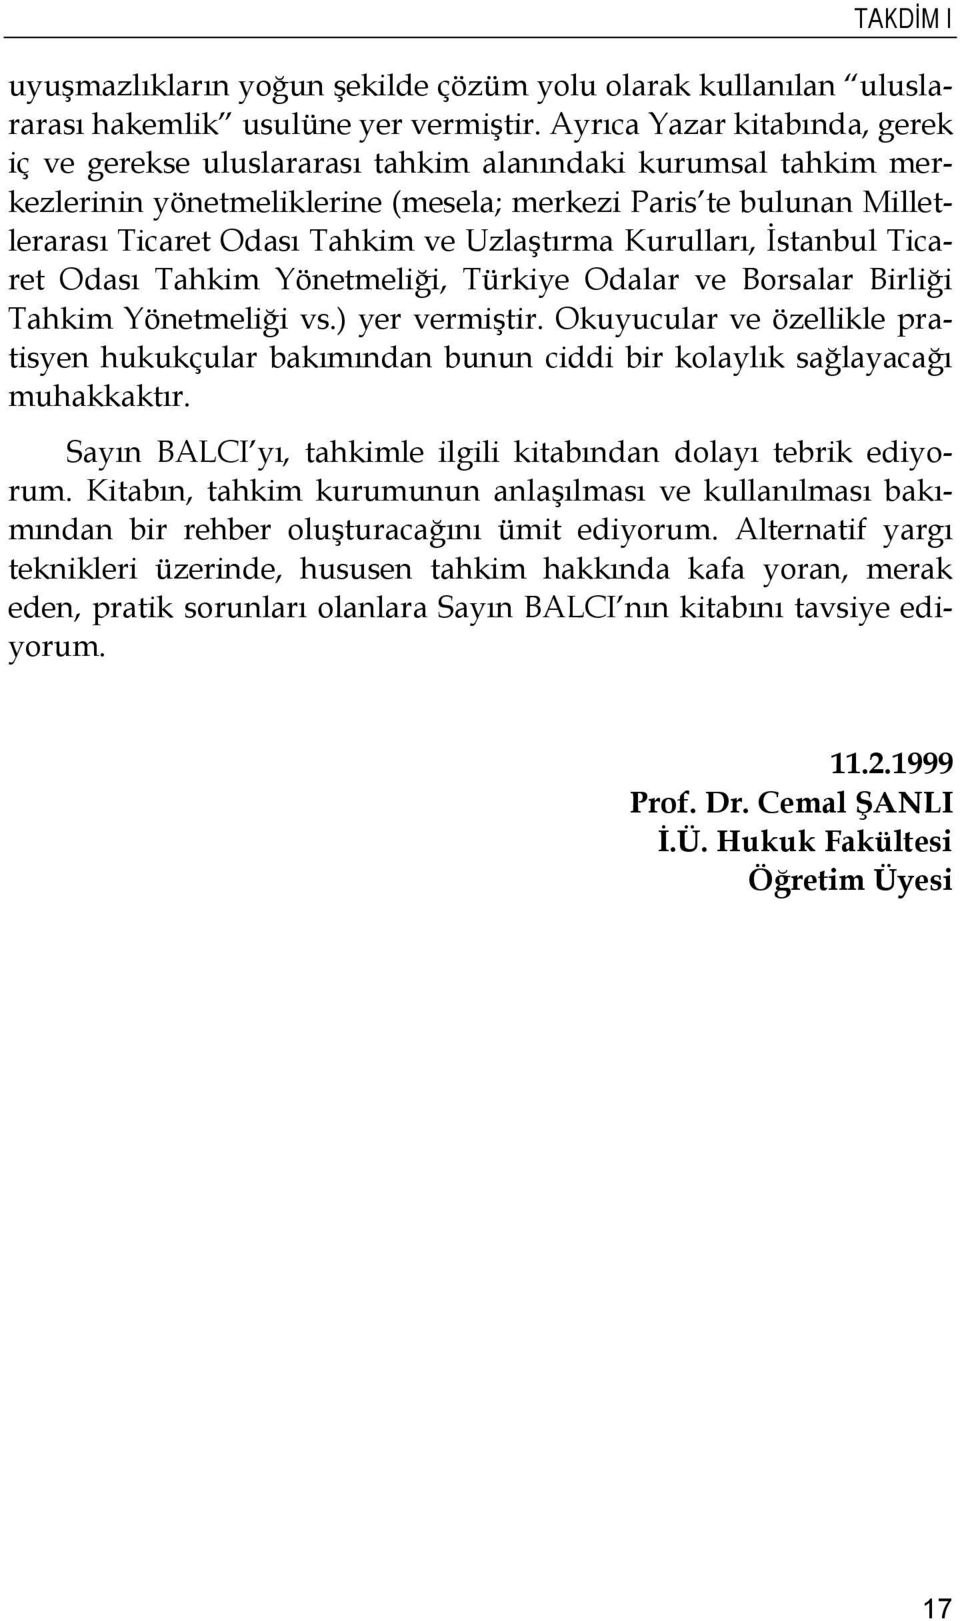 Uzlaştırma Kurulları, İstanbul Ticaret Odası Tahkim Yönetmeliği, Türkiye Odalar ve Borsalar Birliği Tahkim Yönetmeliği vs.) yer vermiştir.